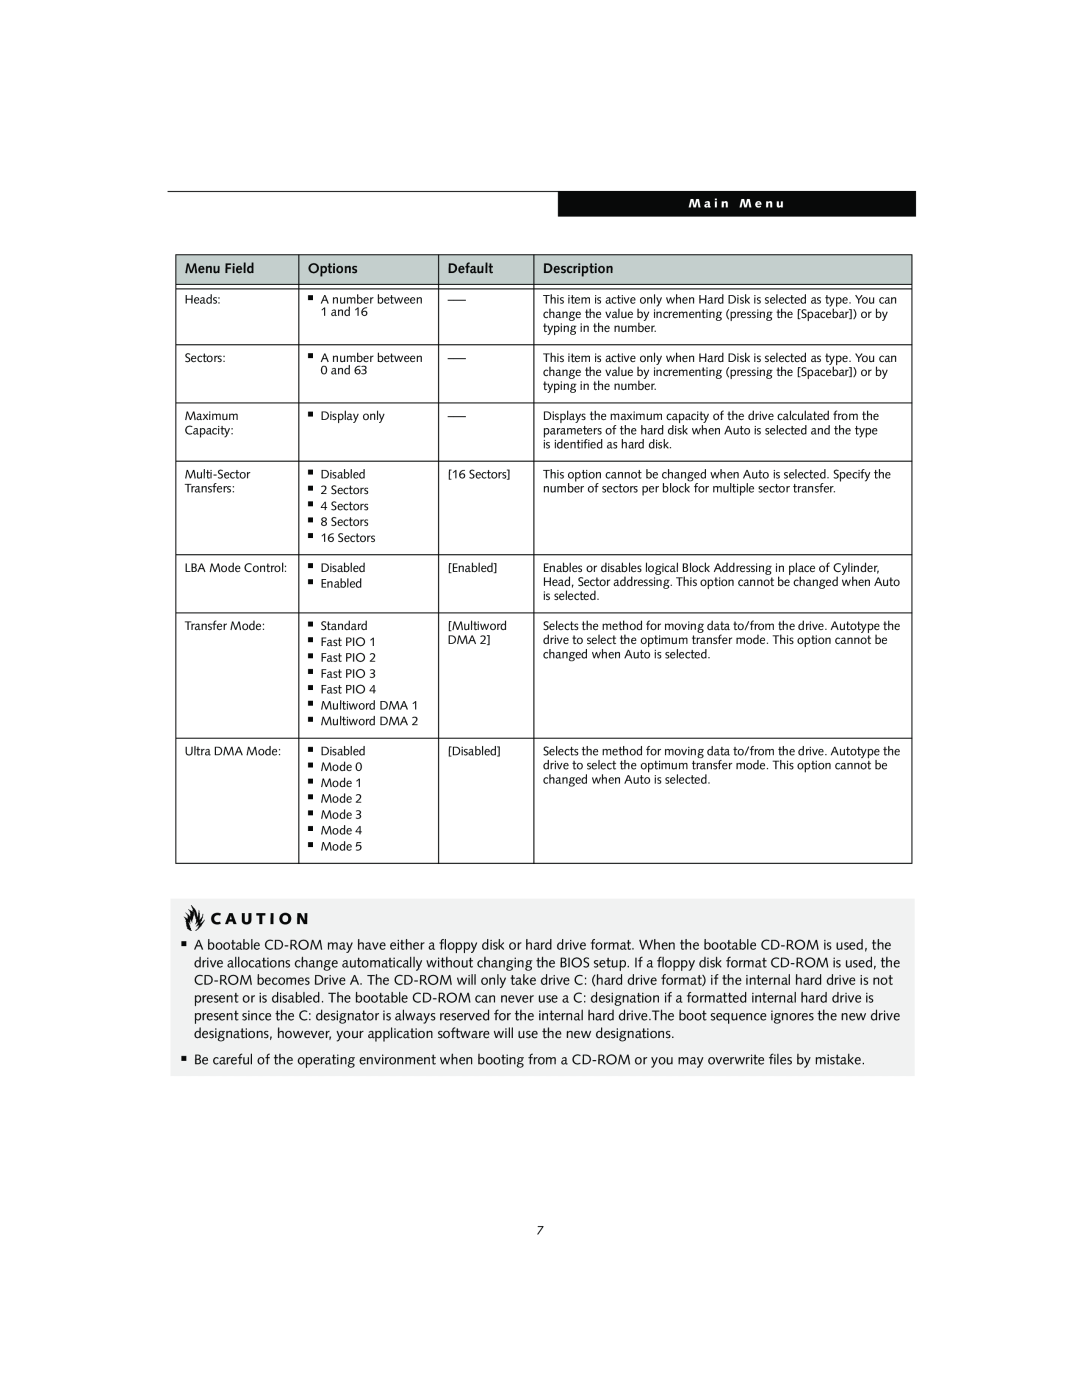 Fujitsu S2010 manual C A U T I O N, Menu Field, Options, Default, Description 